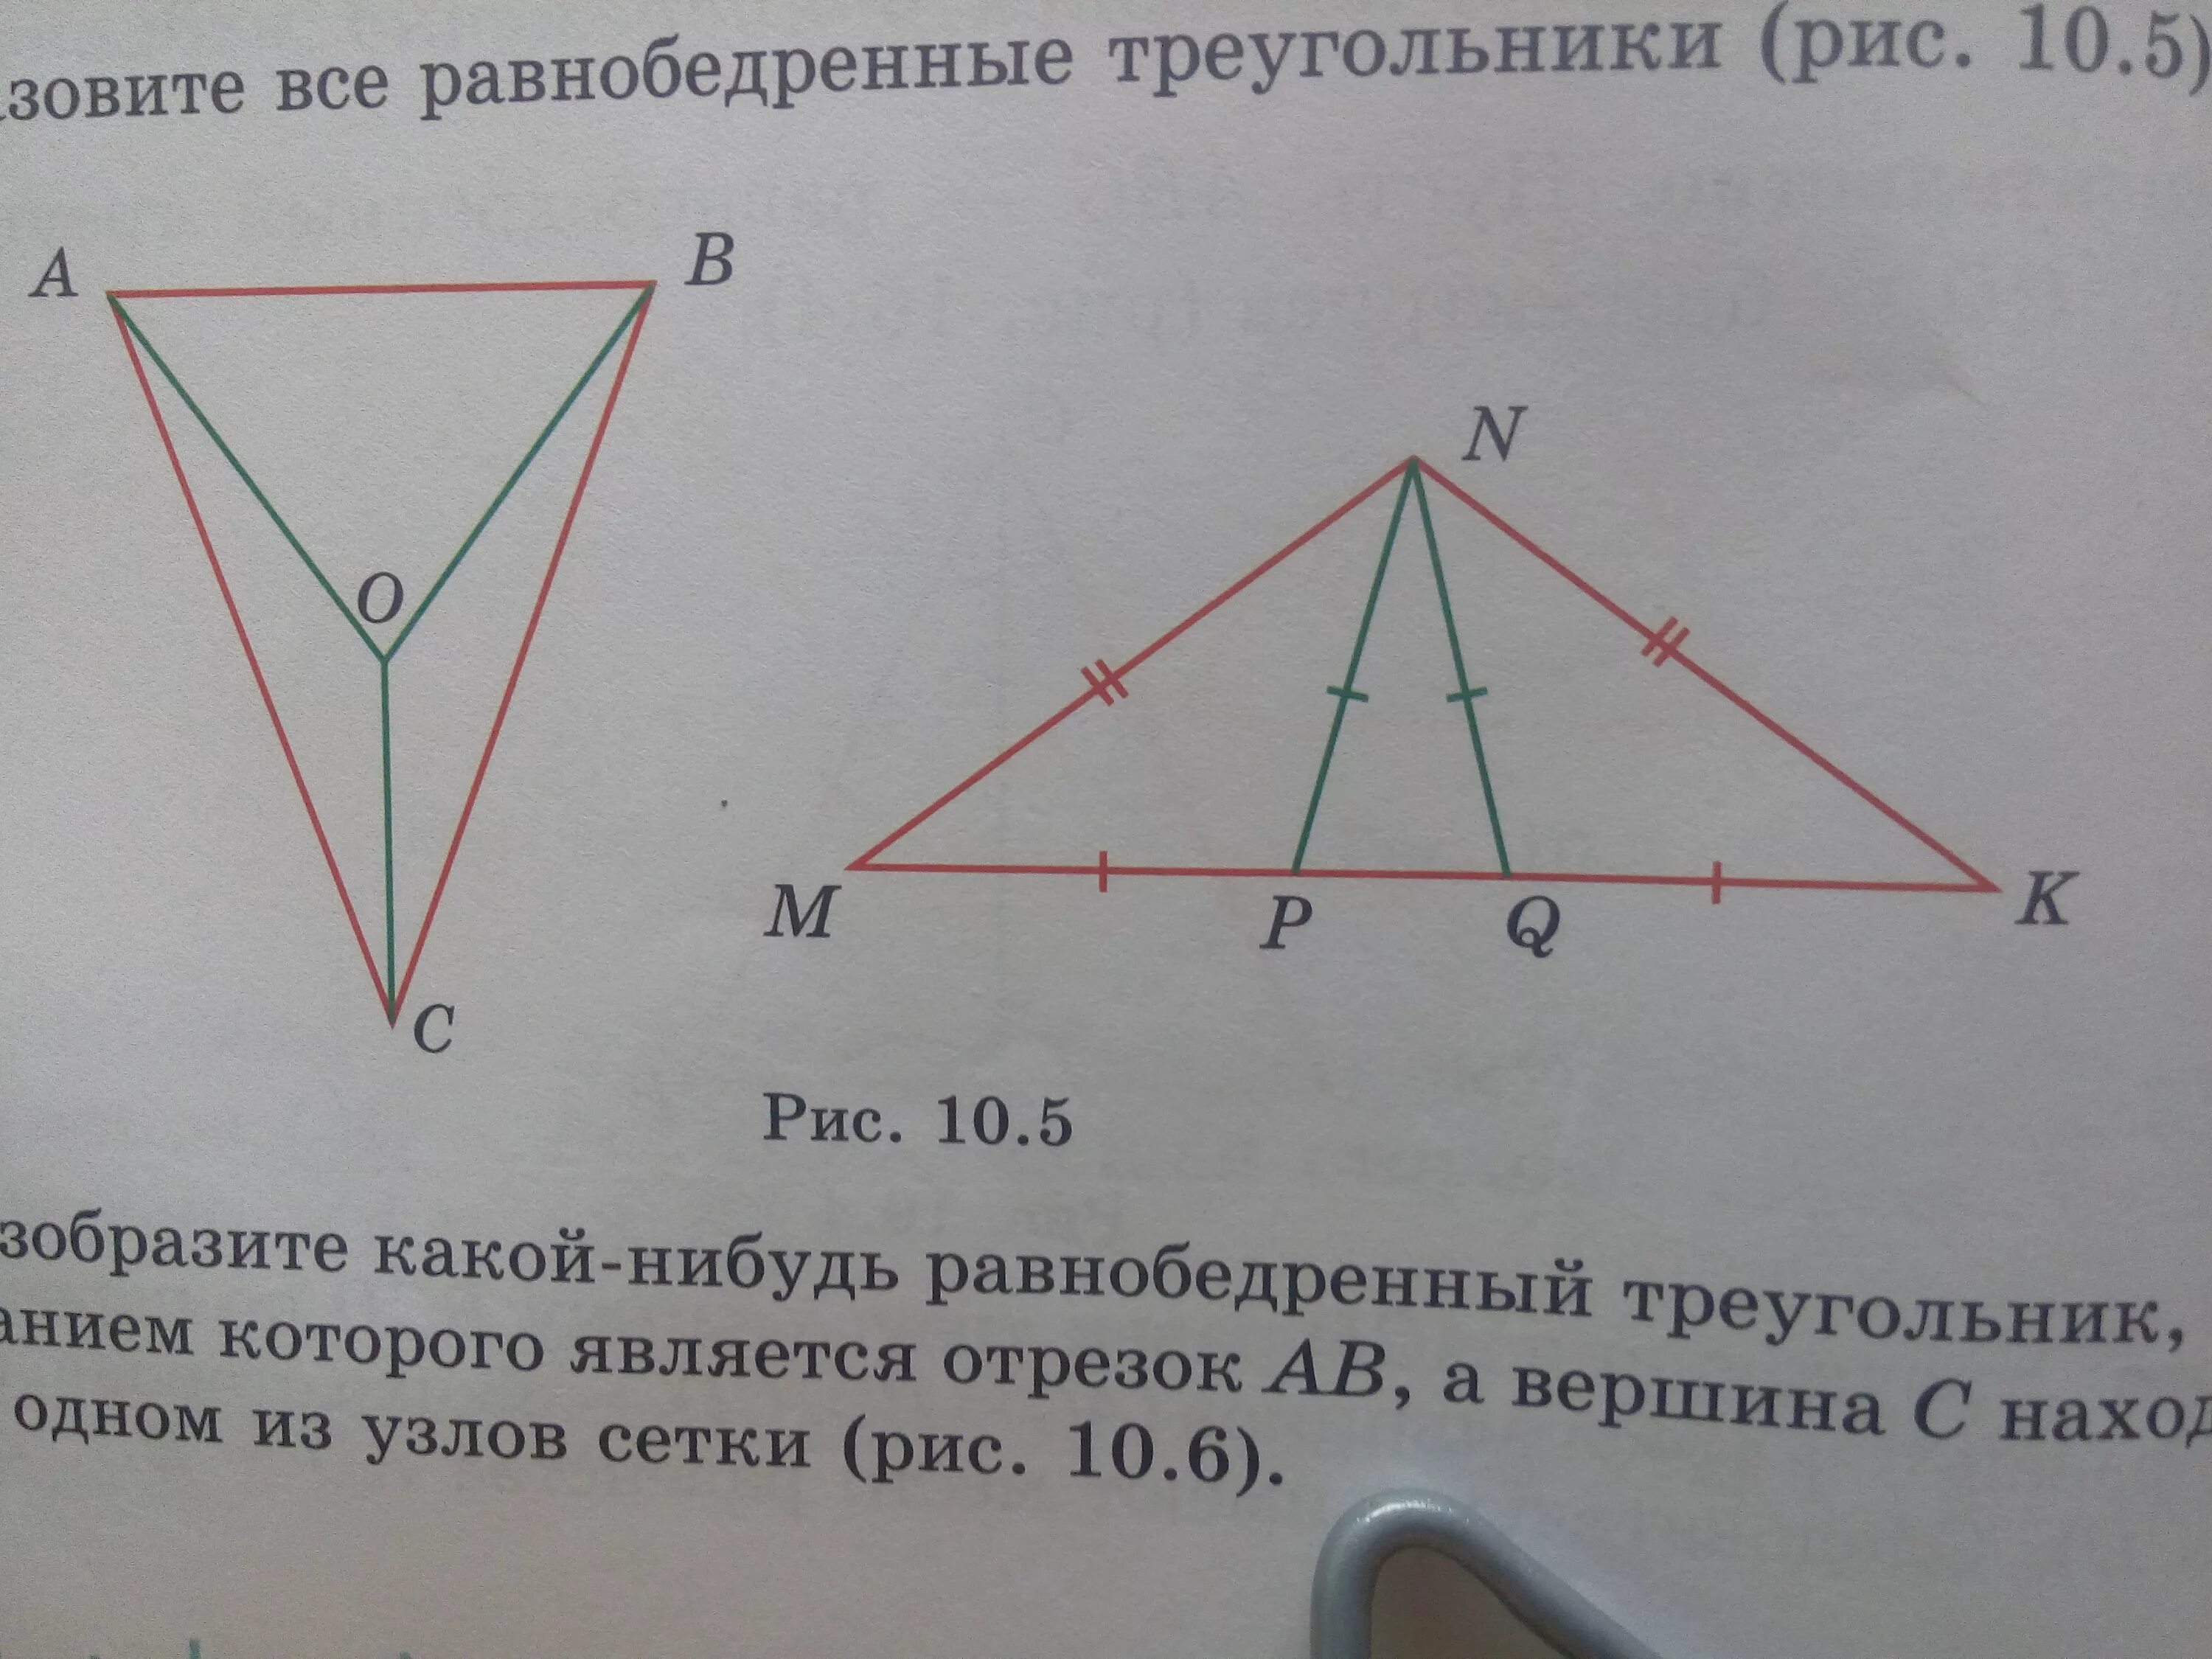 Построение равнобедренного треугольника. Треугольники с рисом. Учи ру Найдите на рисунке равные треугольники. Назовите все равнобедренные треугольники и их элементы.